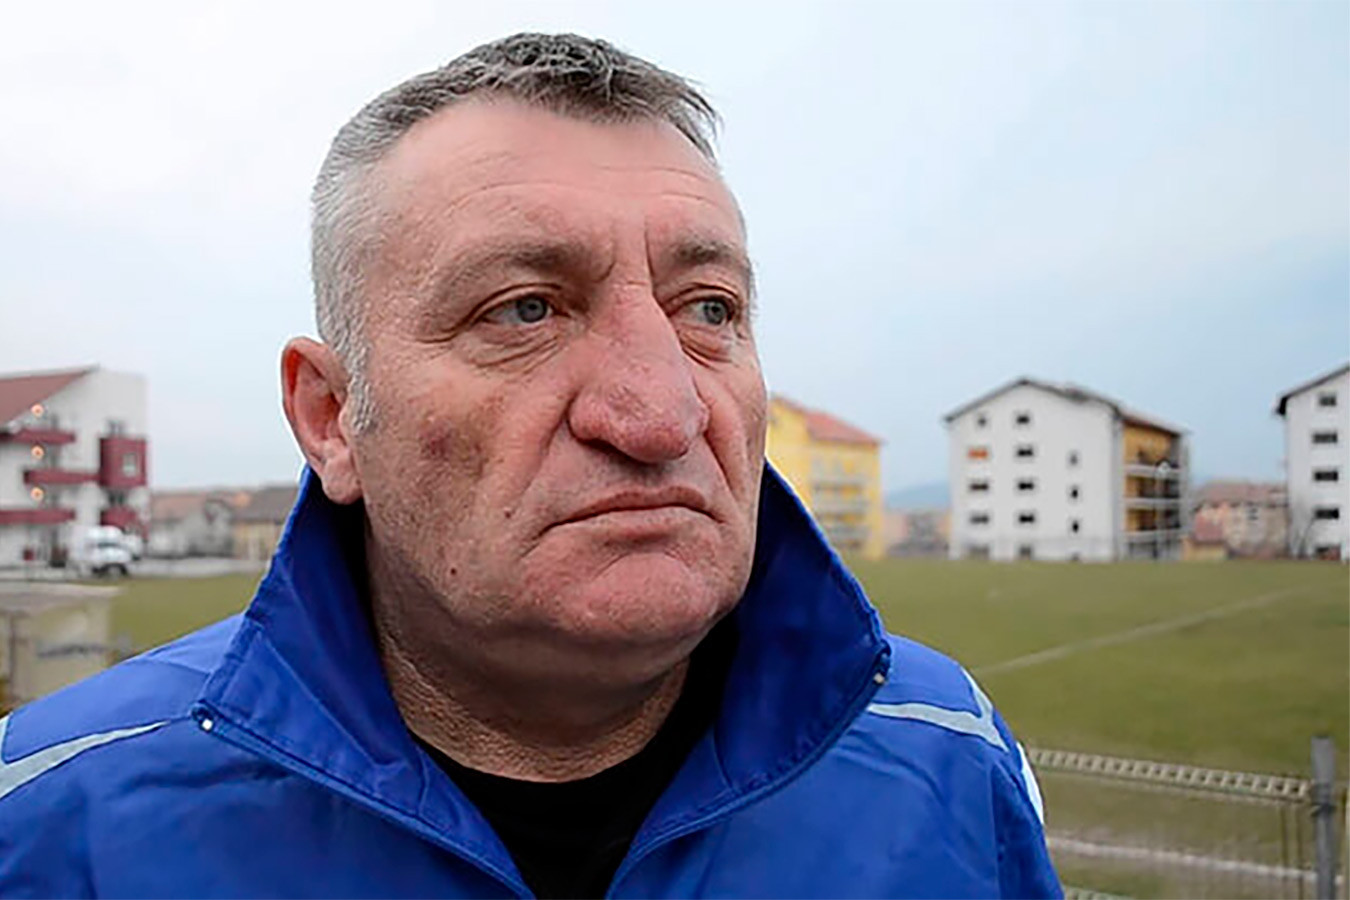 Румынский тренер ушёл из клуба из-за первоапрельской шутки